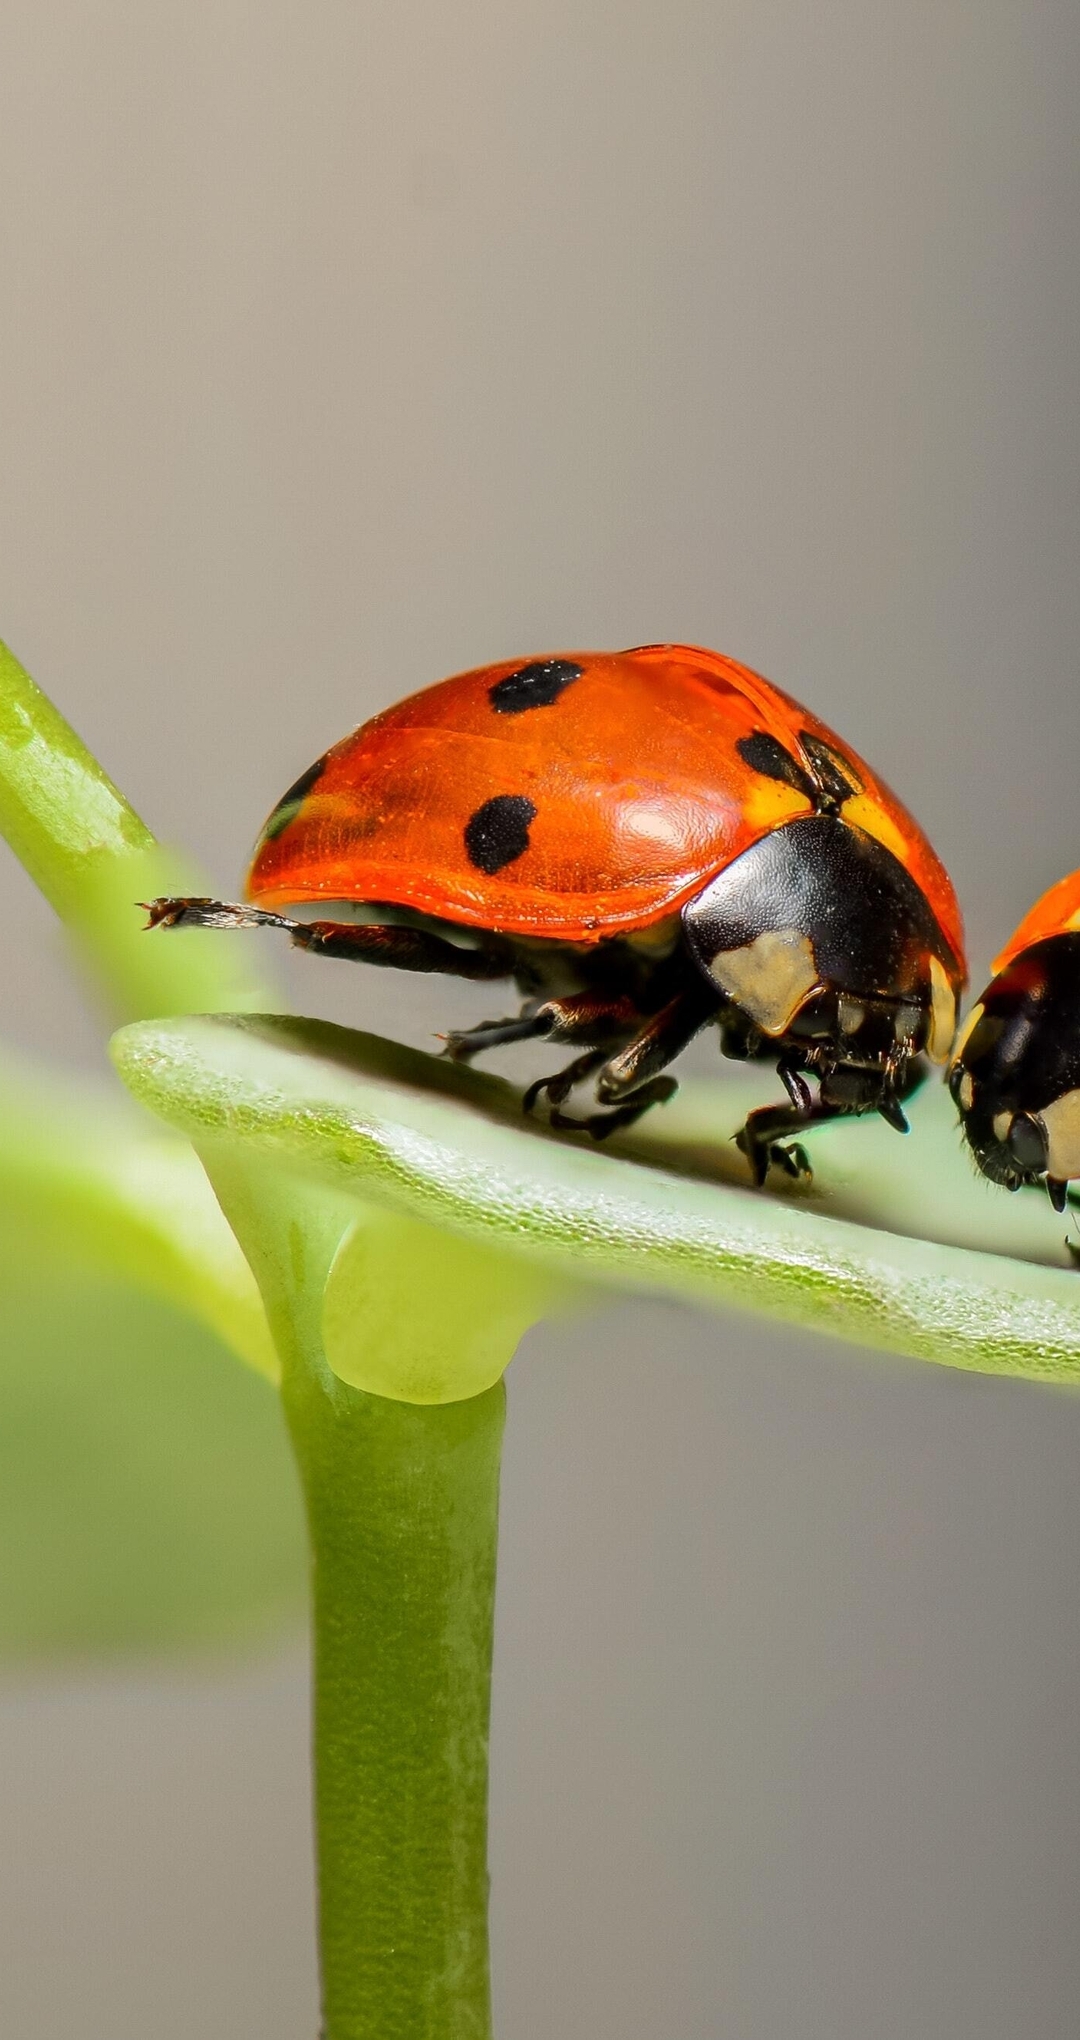 Image: Ladybugs, couple, sit, leaf